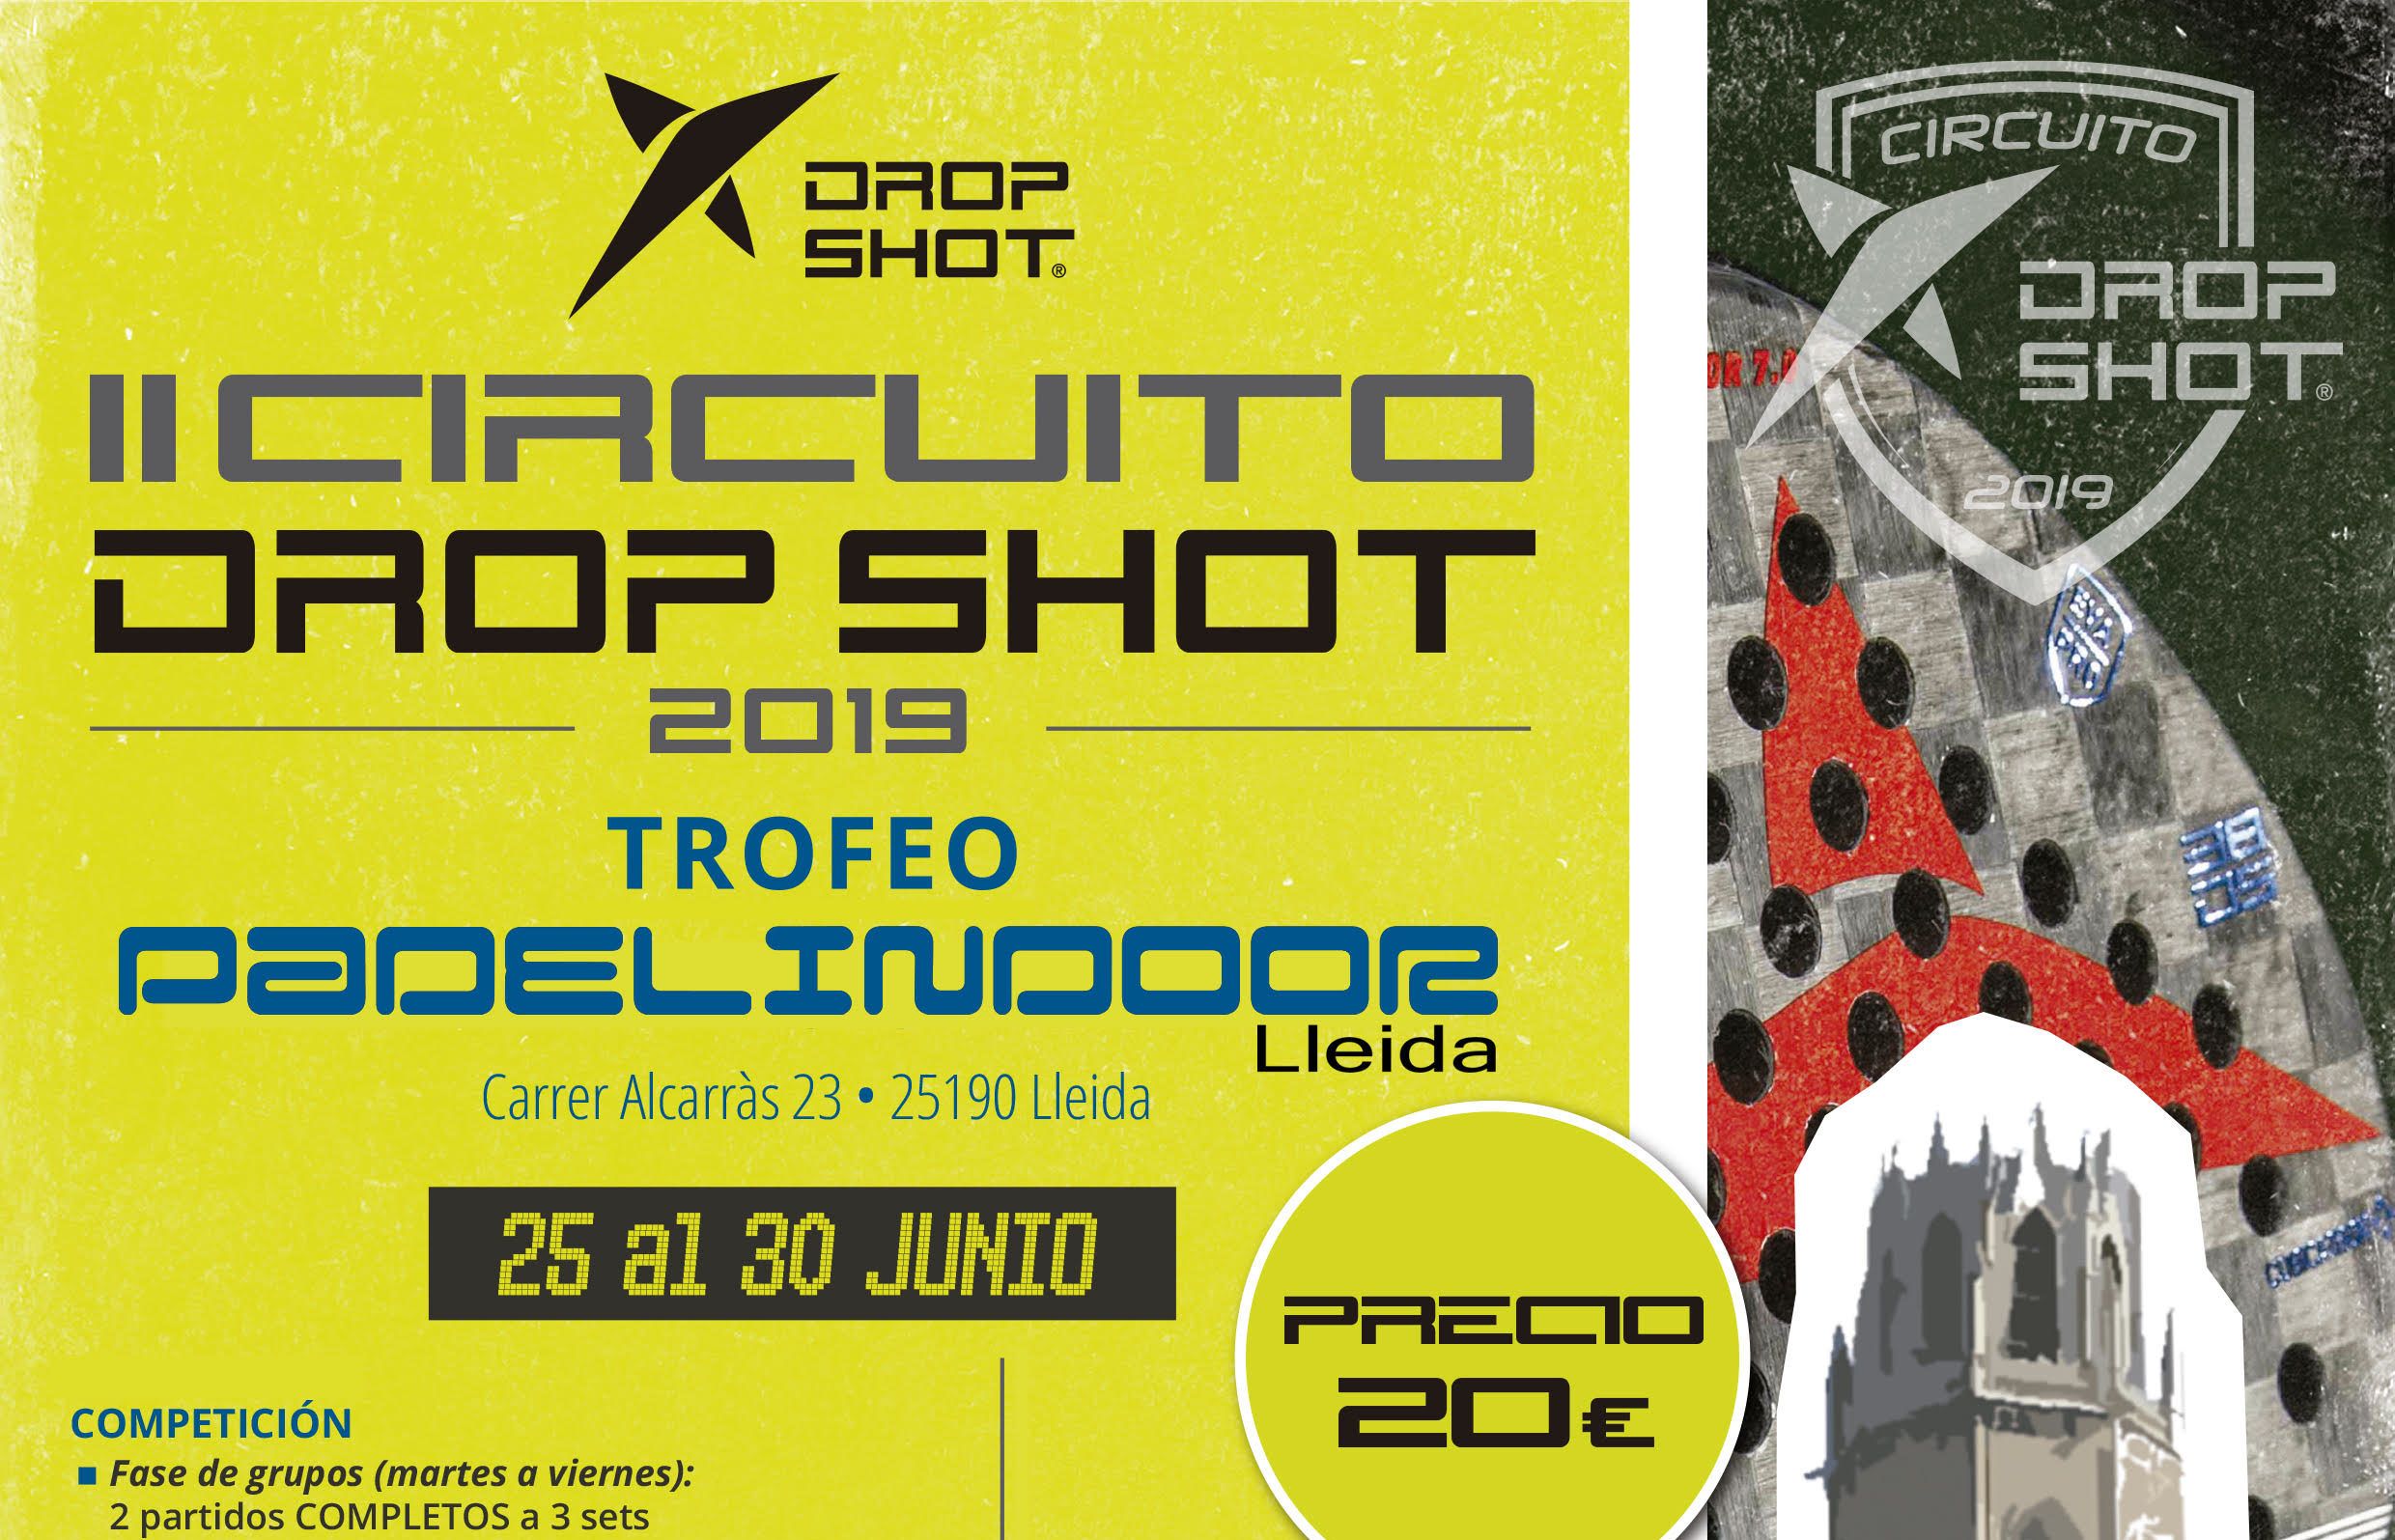 Lleida acogerá una nueva parada del Circuito Drop Shot